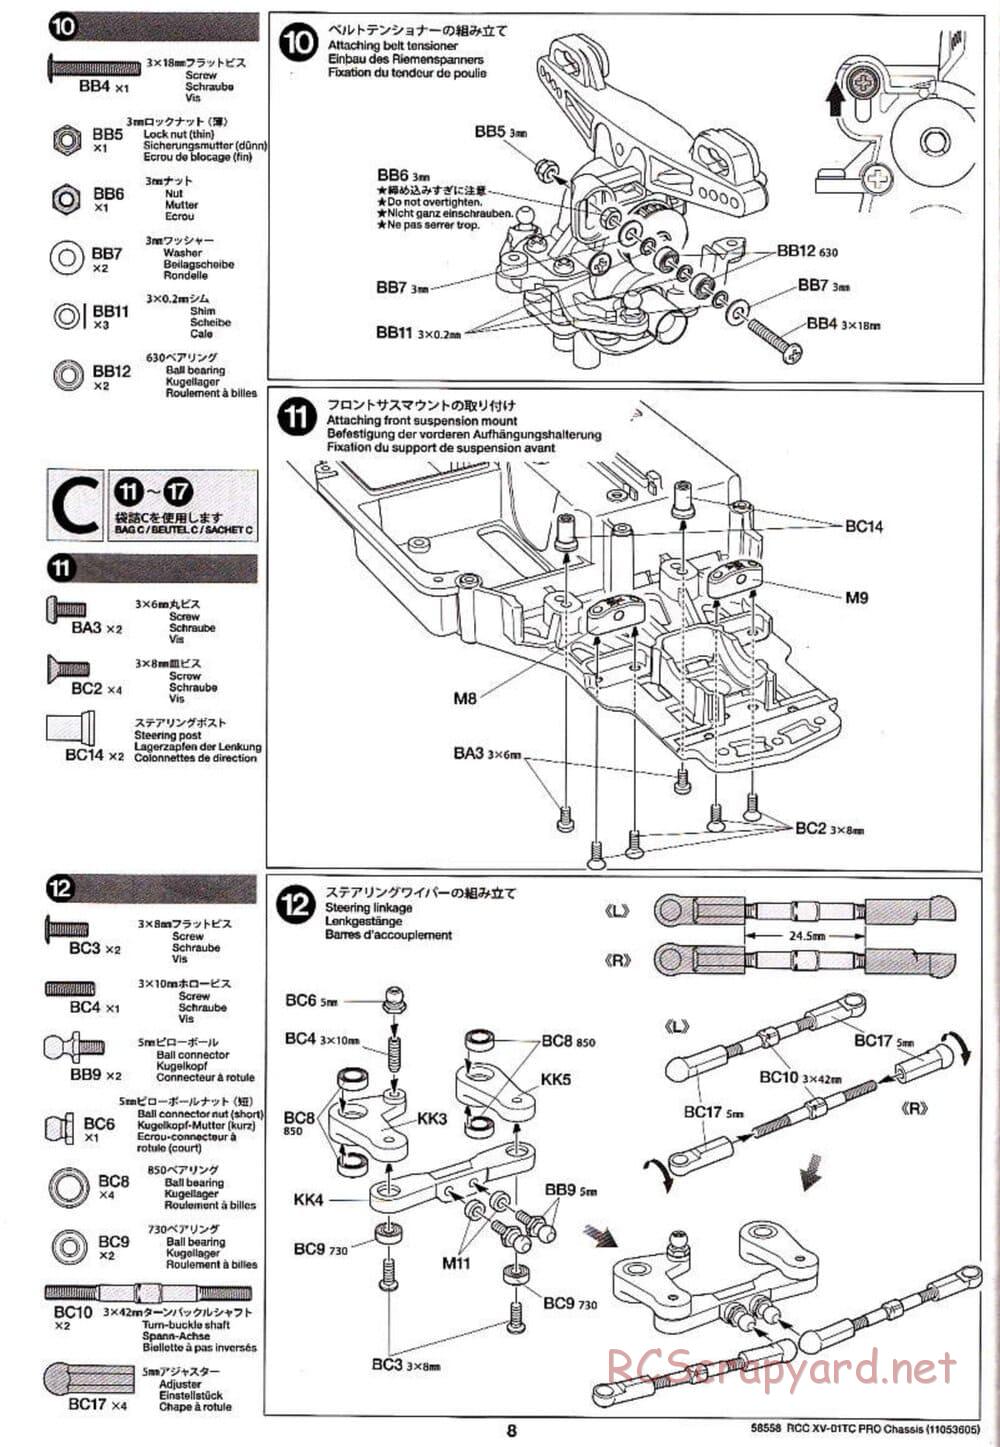 Tamiya - XV-01TC Chassis - Manual - Page 8